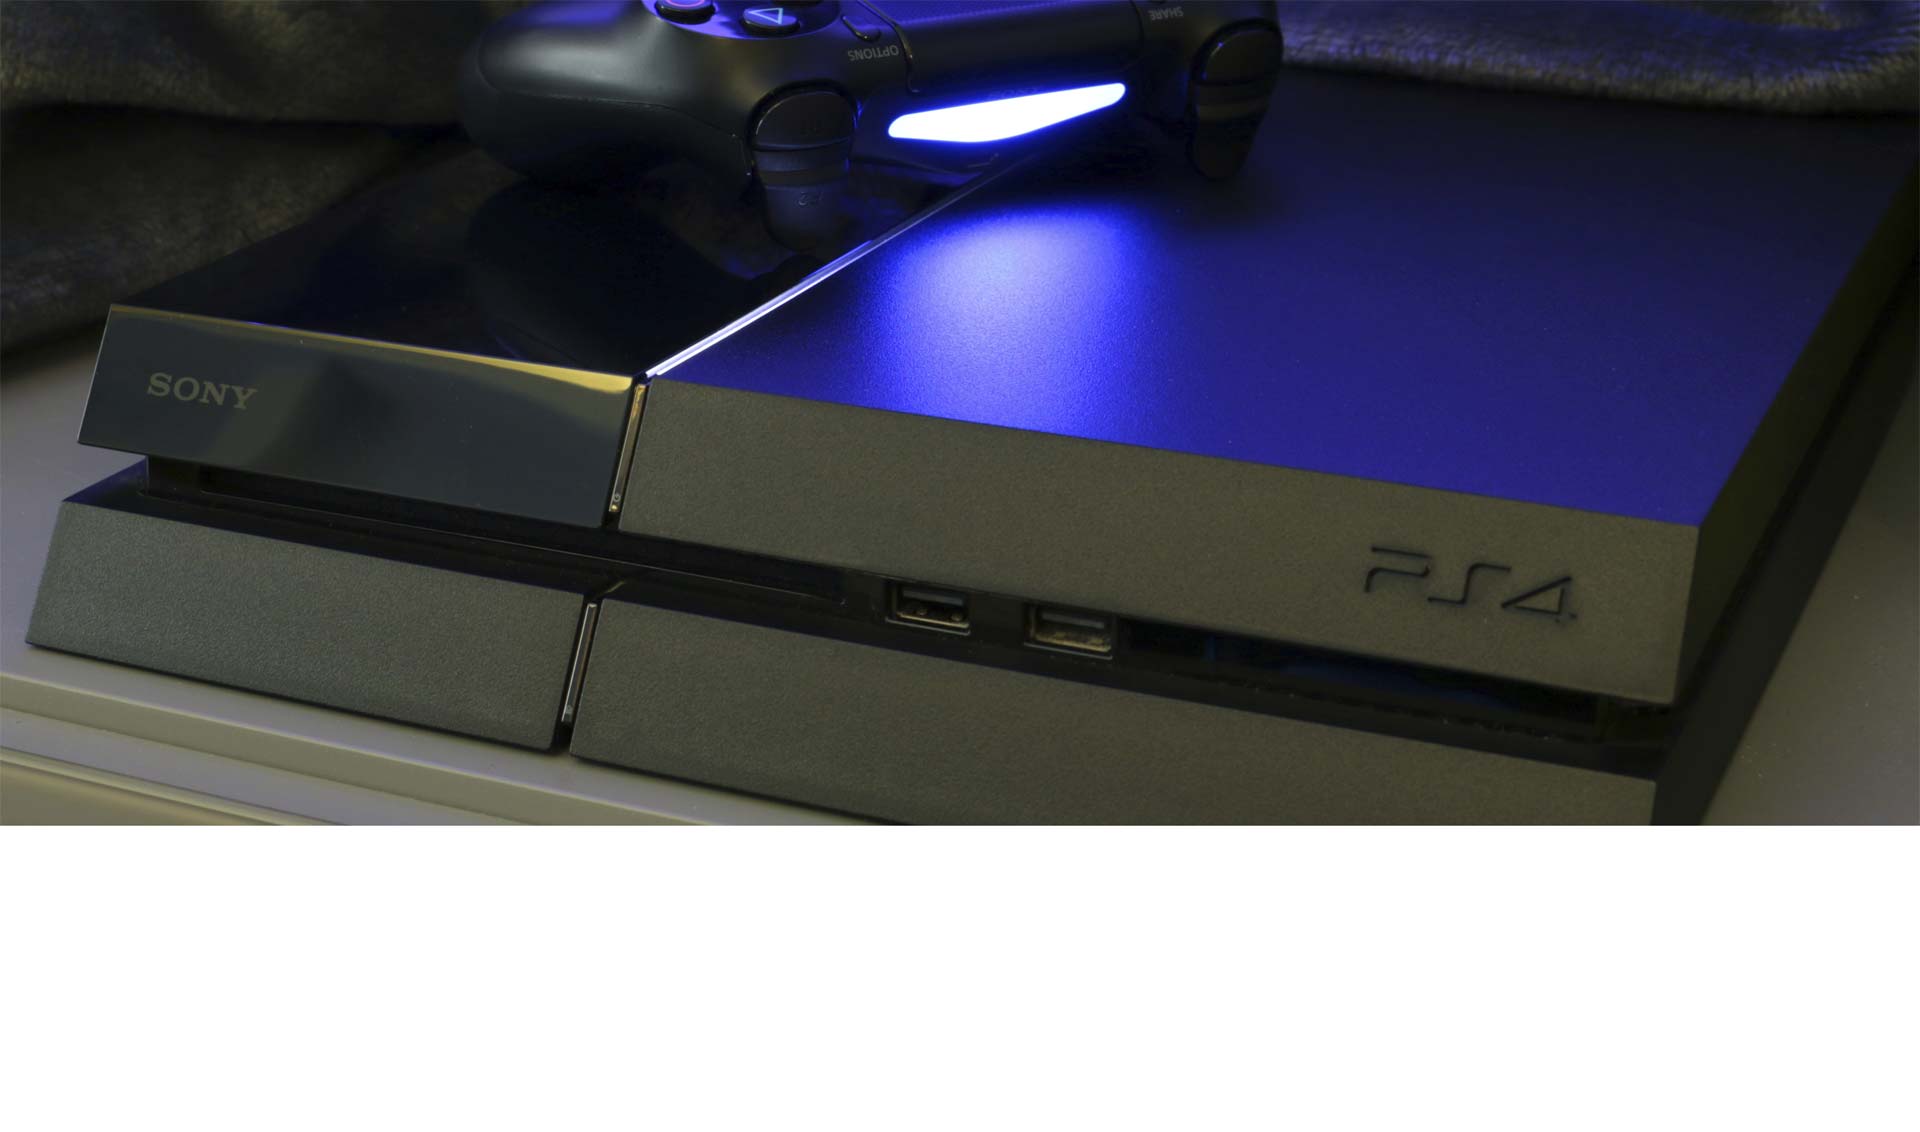 Permite administrar las descargas de videojuegos en la consola, controlar remotamente el PS4 y activar una segunda pantalla durante el juego